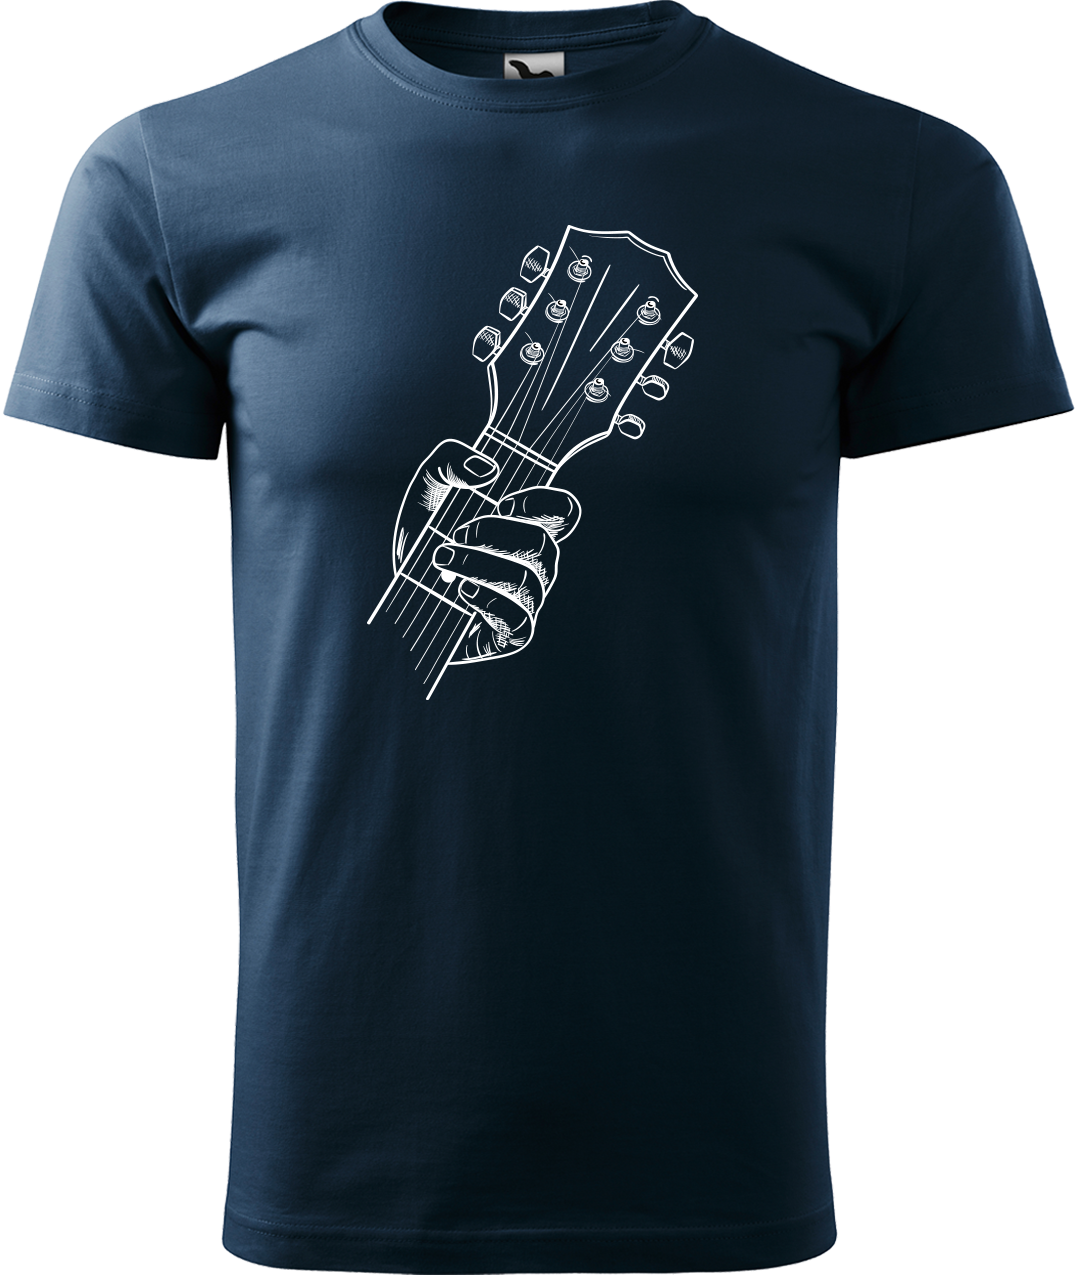 Pánské tričko s kytarou - Hlava kytary Velikost: L, Barva: Námořní modrá (02)